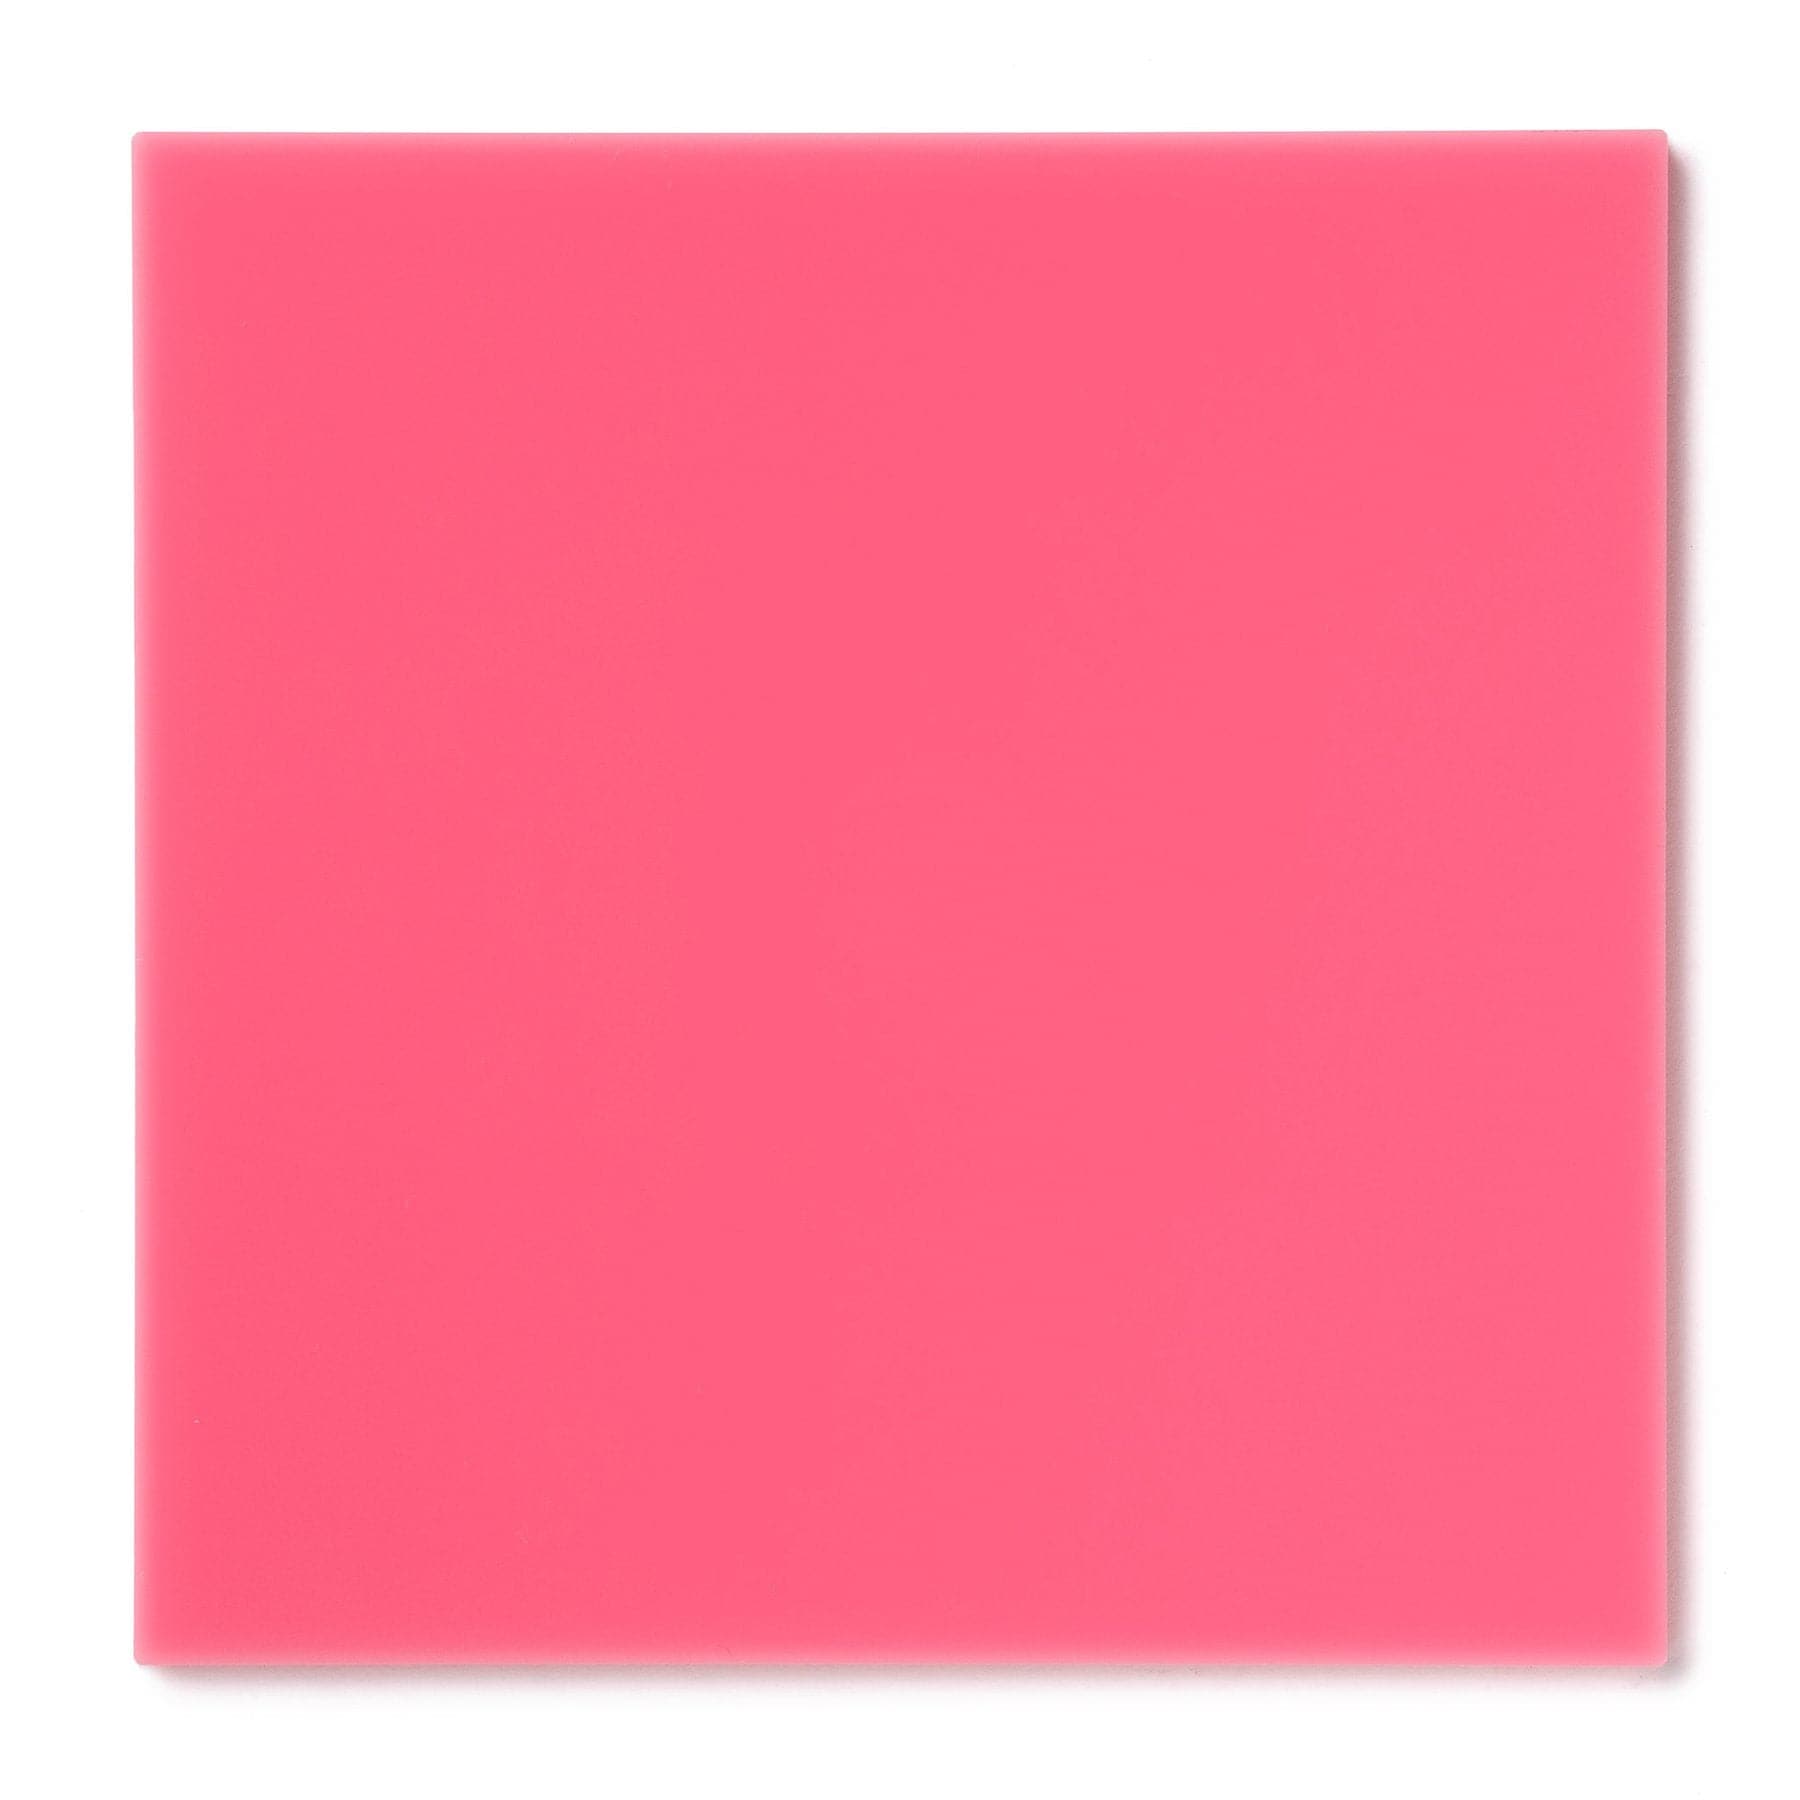 Acrylic Sheet 1/8" Pink Opaque #3199